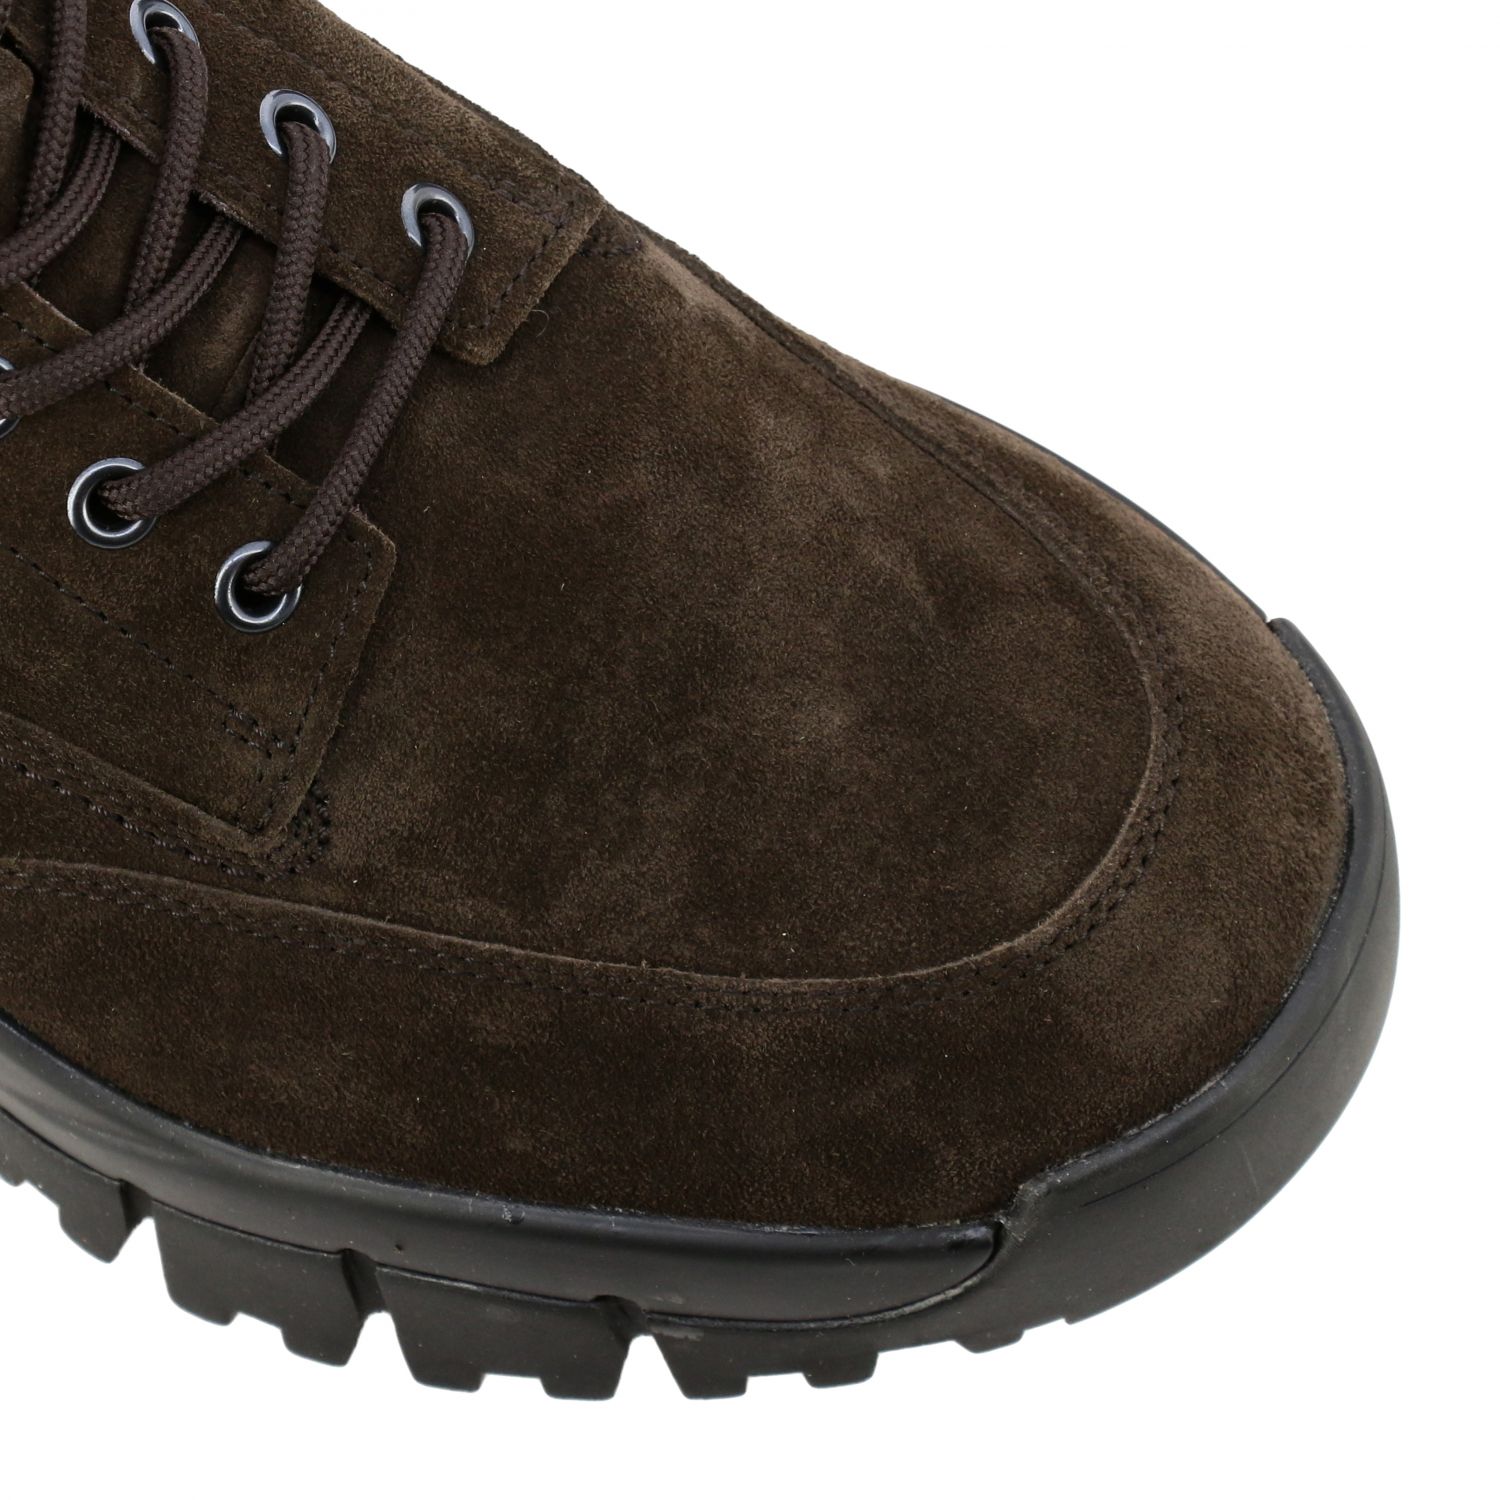 Botas Tod's: Zapatos hombre Tod's marrón oscuro 4